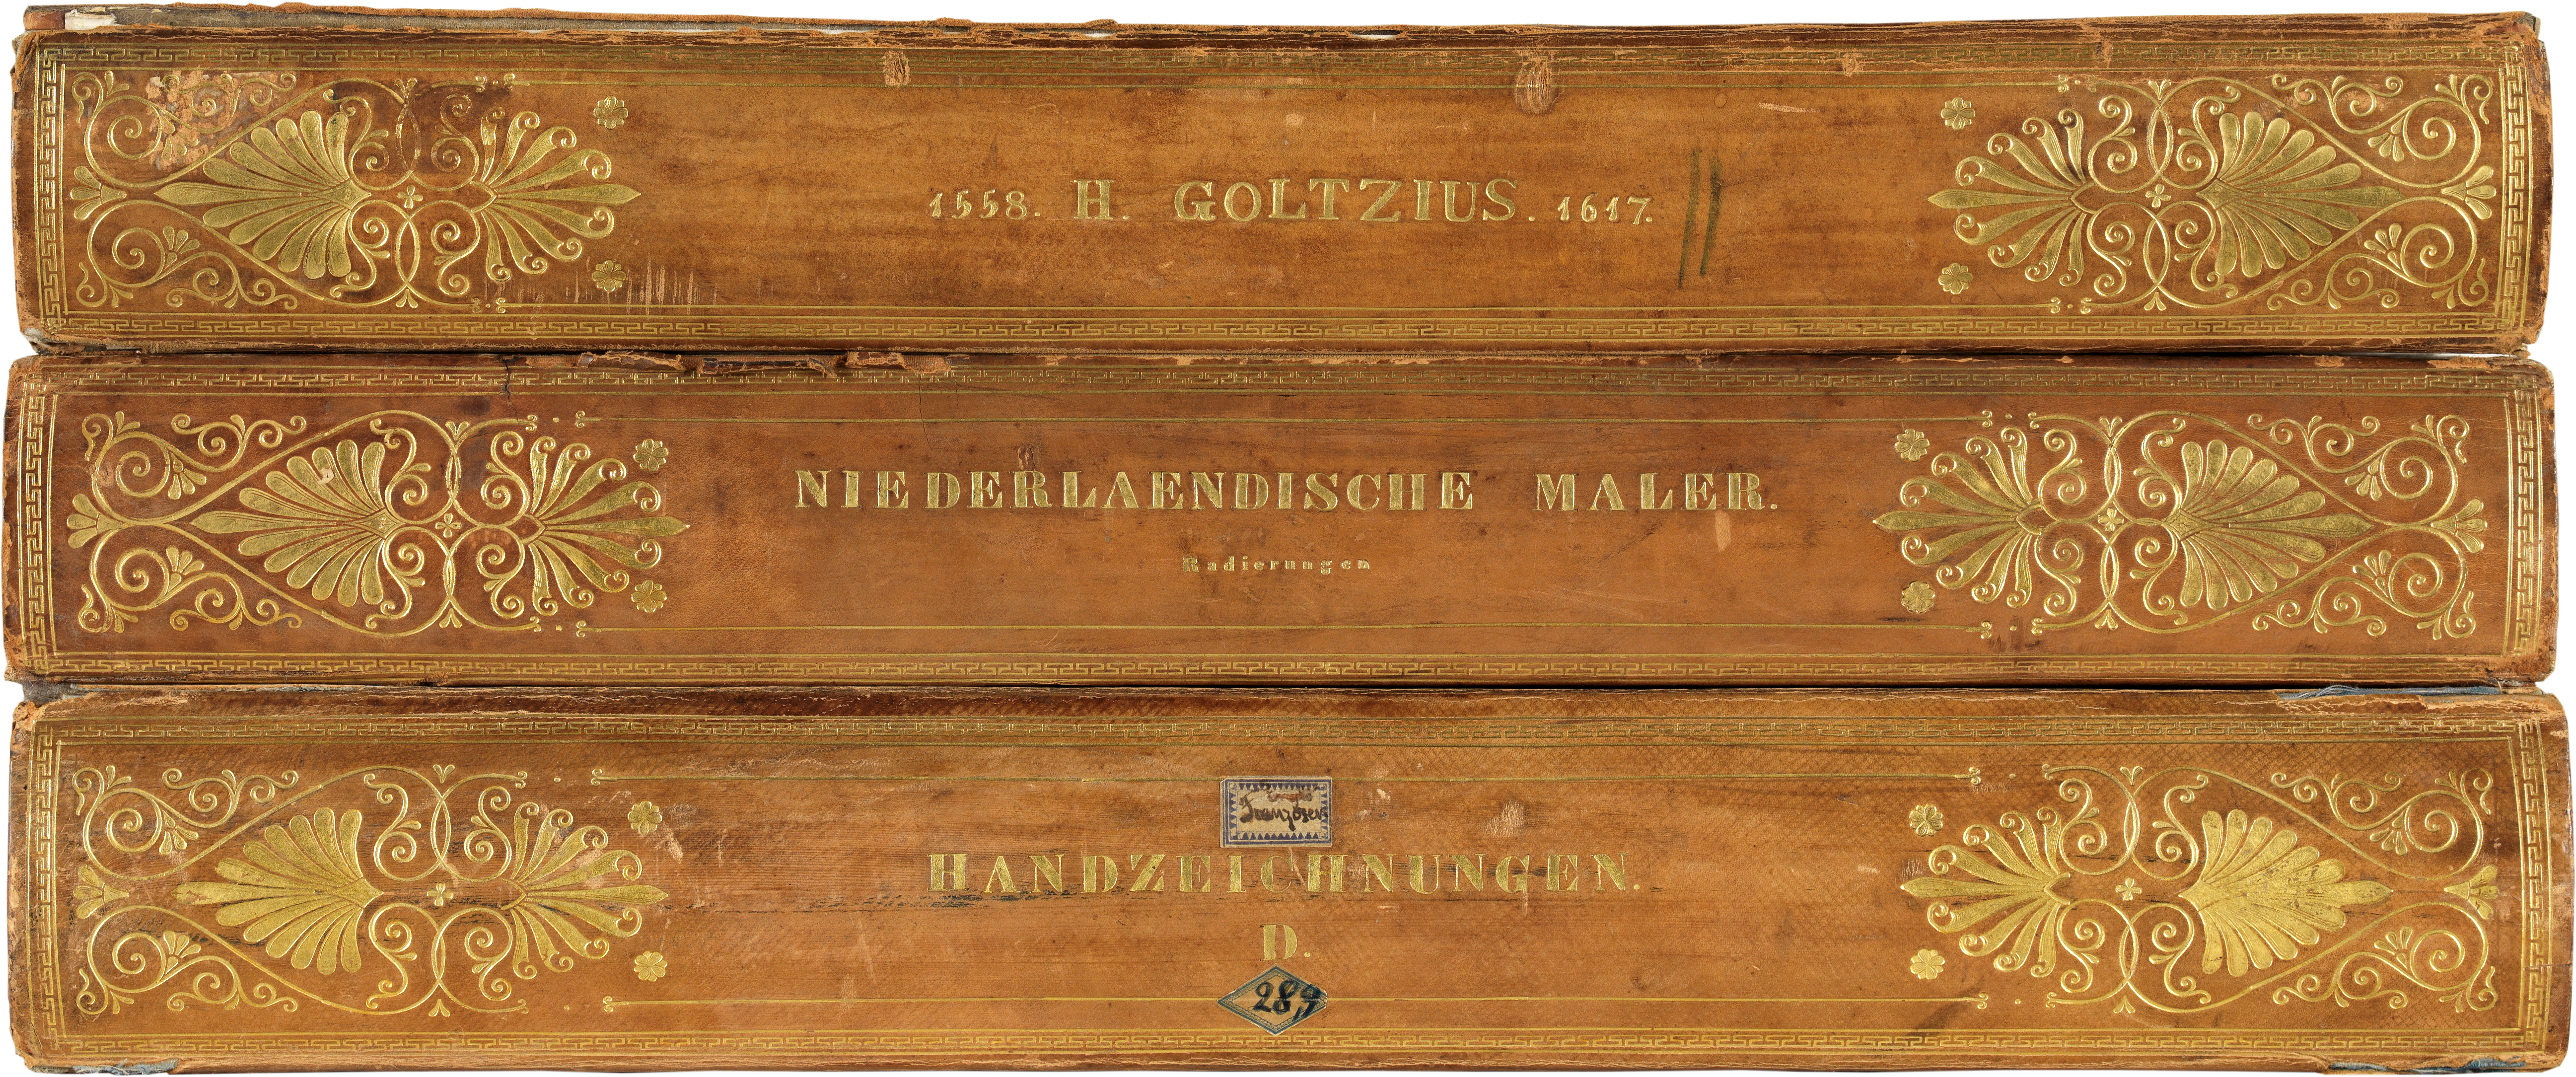 Das Äußere einer Kassette aus dem Kupferstichkabinett. Die Abbildung erinnert an Buchrücken.